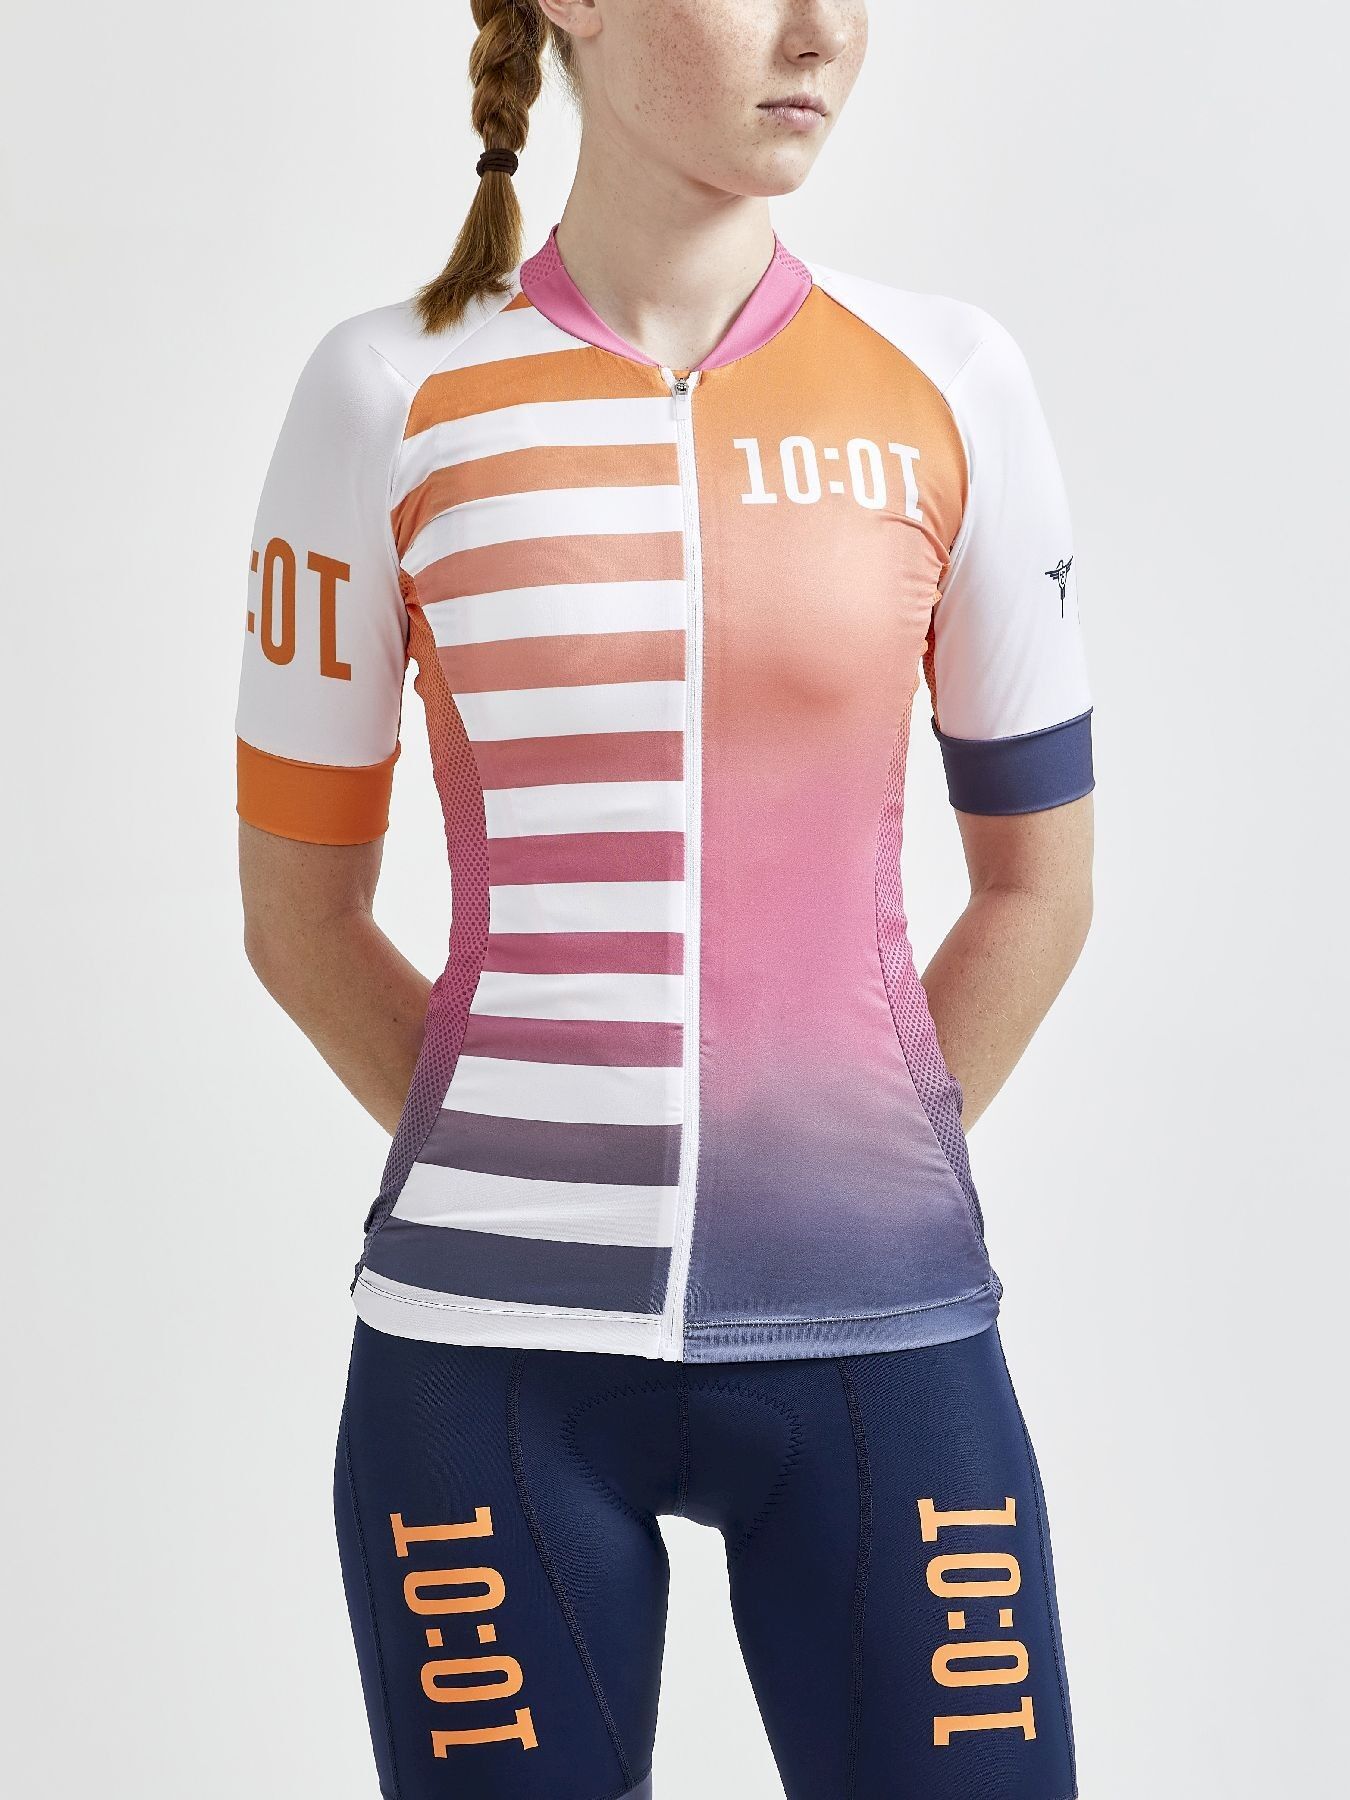 Craft Adv Hmc Endurance Graphic Jersey - Maglia ciclismo - Donna